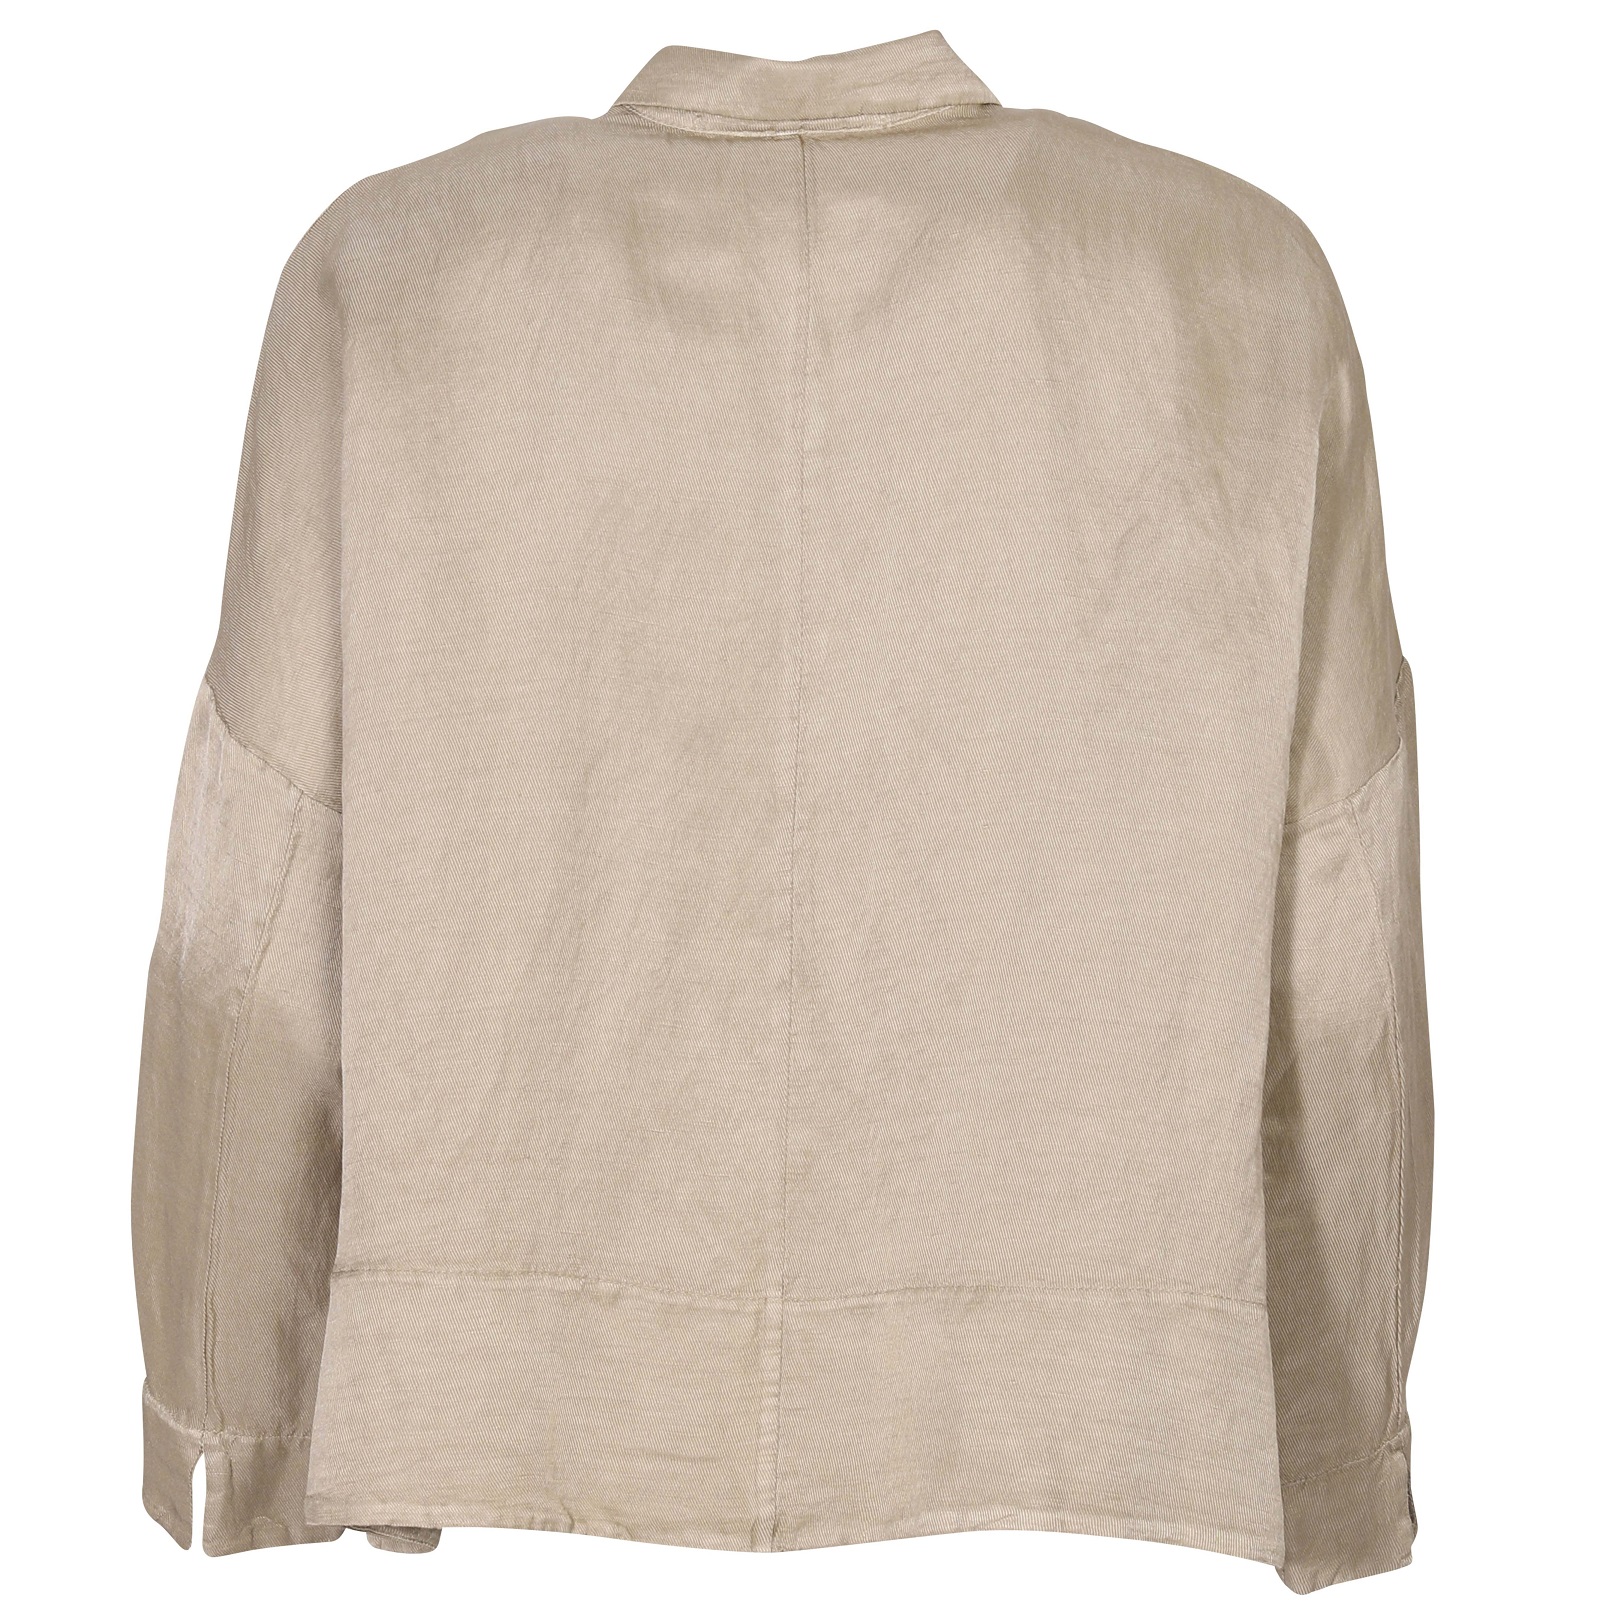 TRANSIT PAR SUCH Linen Jacket in Khaki S